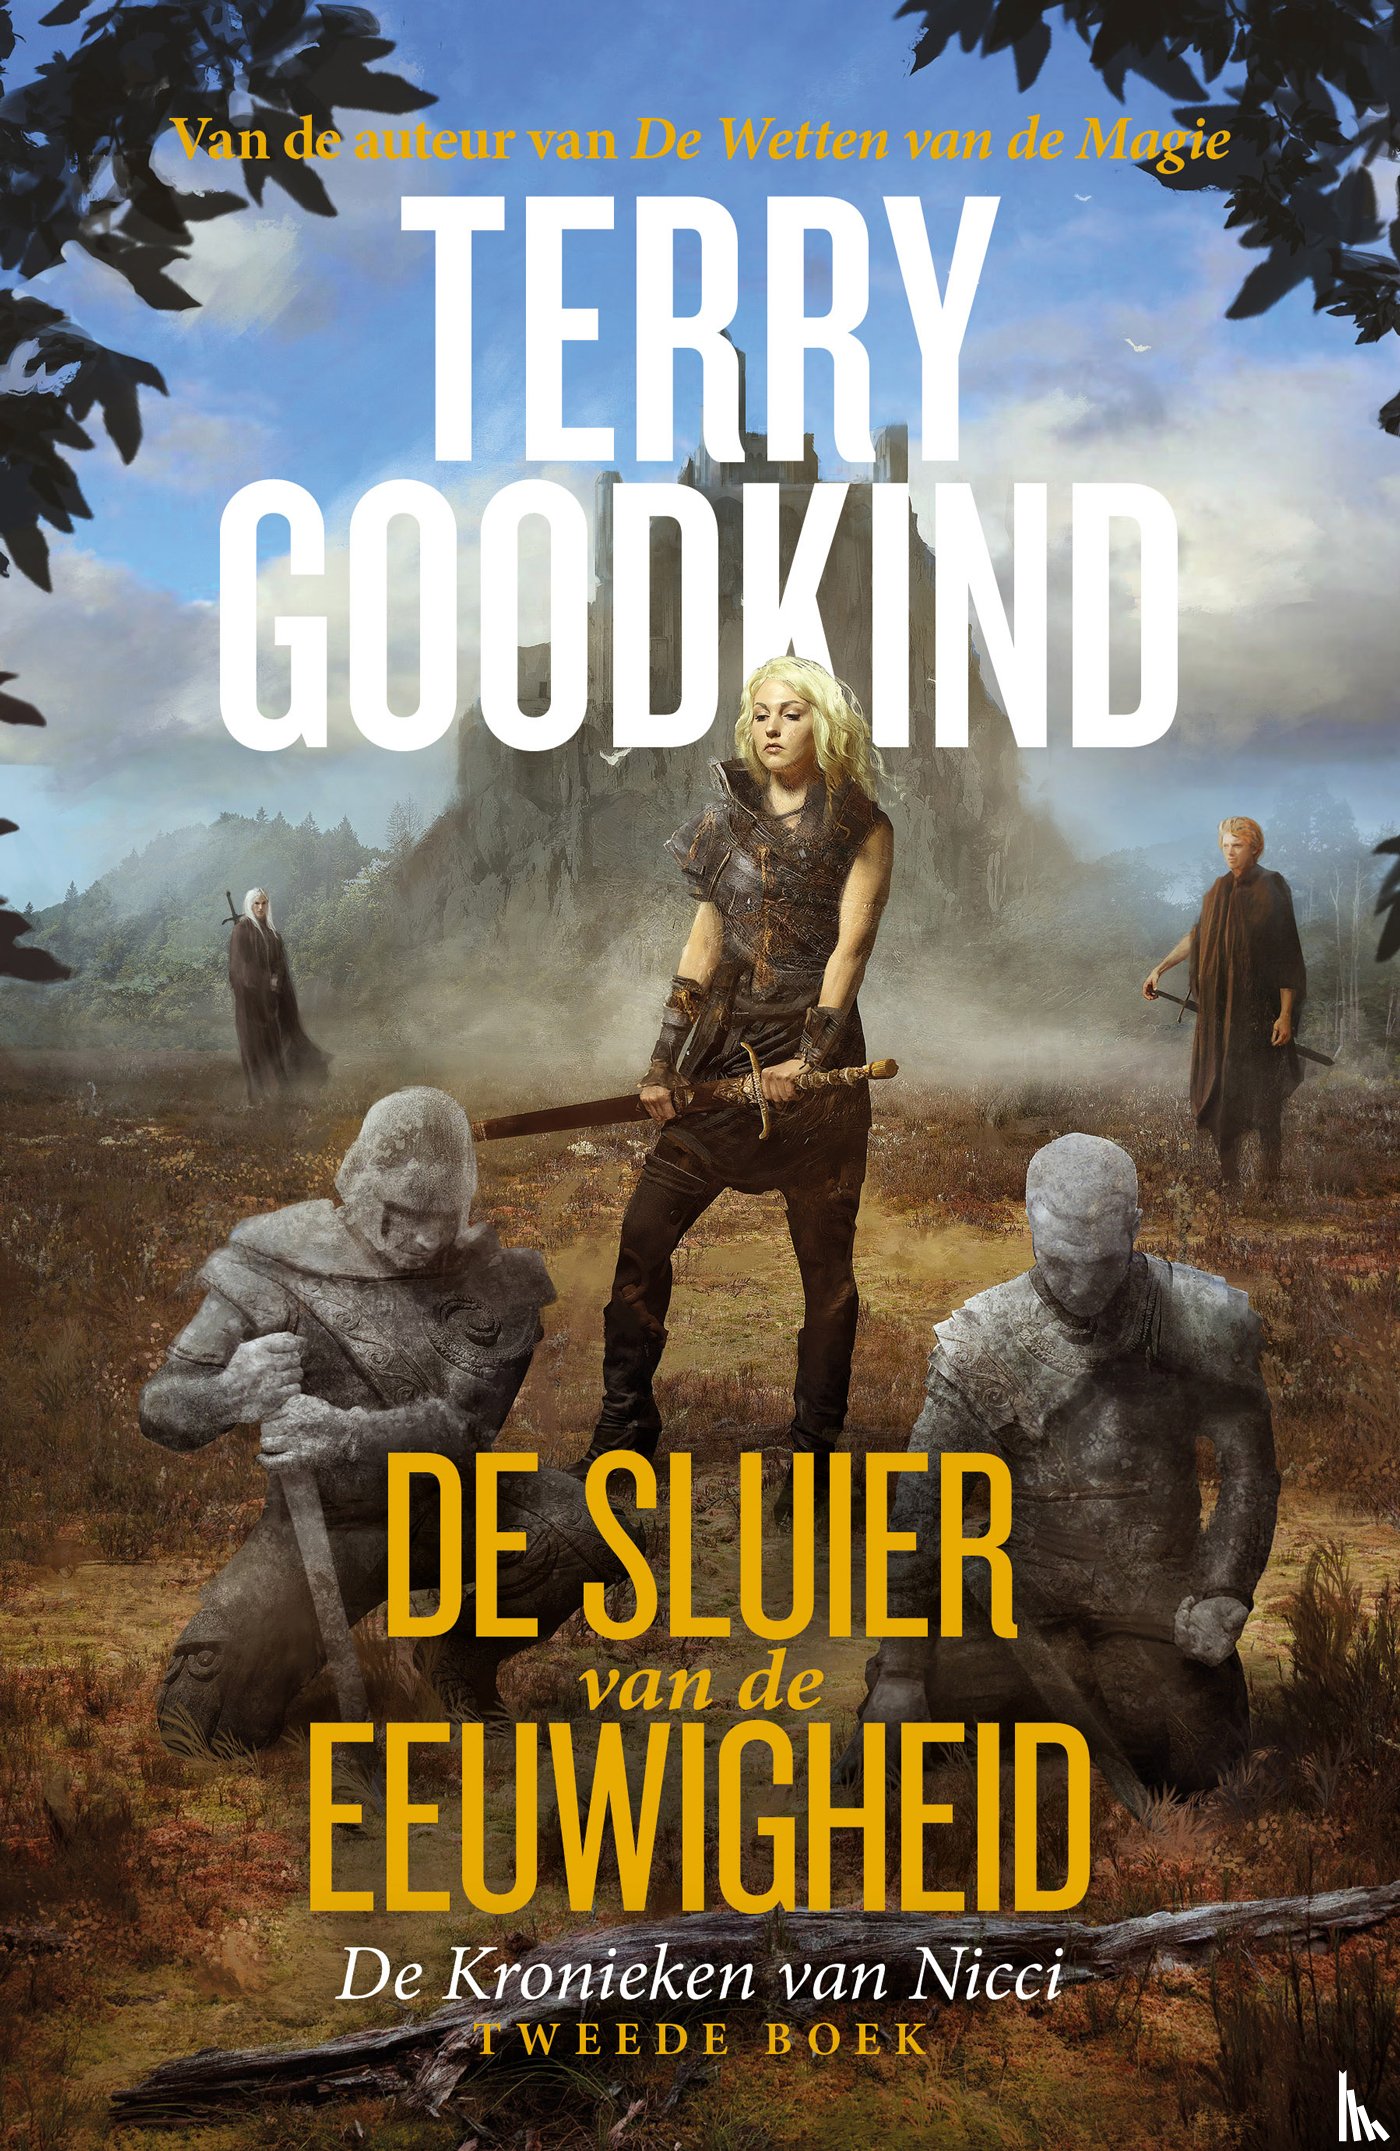 Goodkind, Terry - De Sluier van de Eeuwigheid